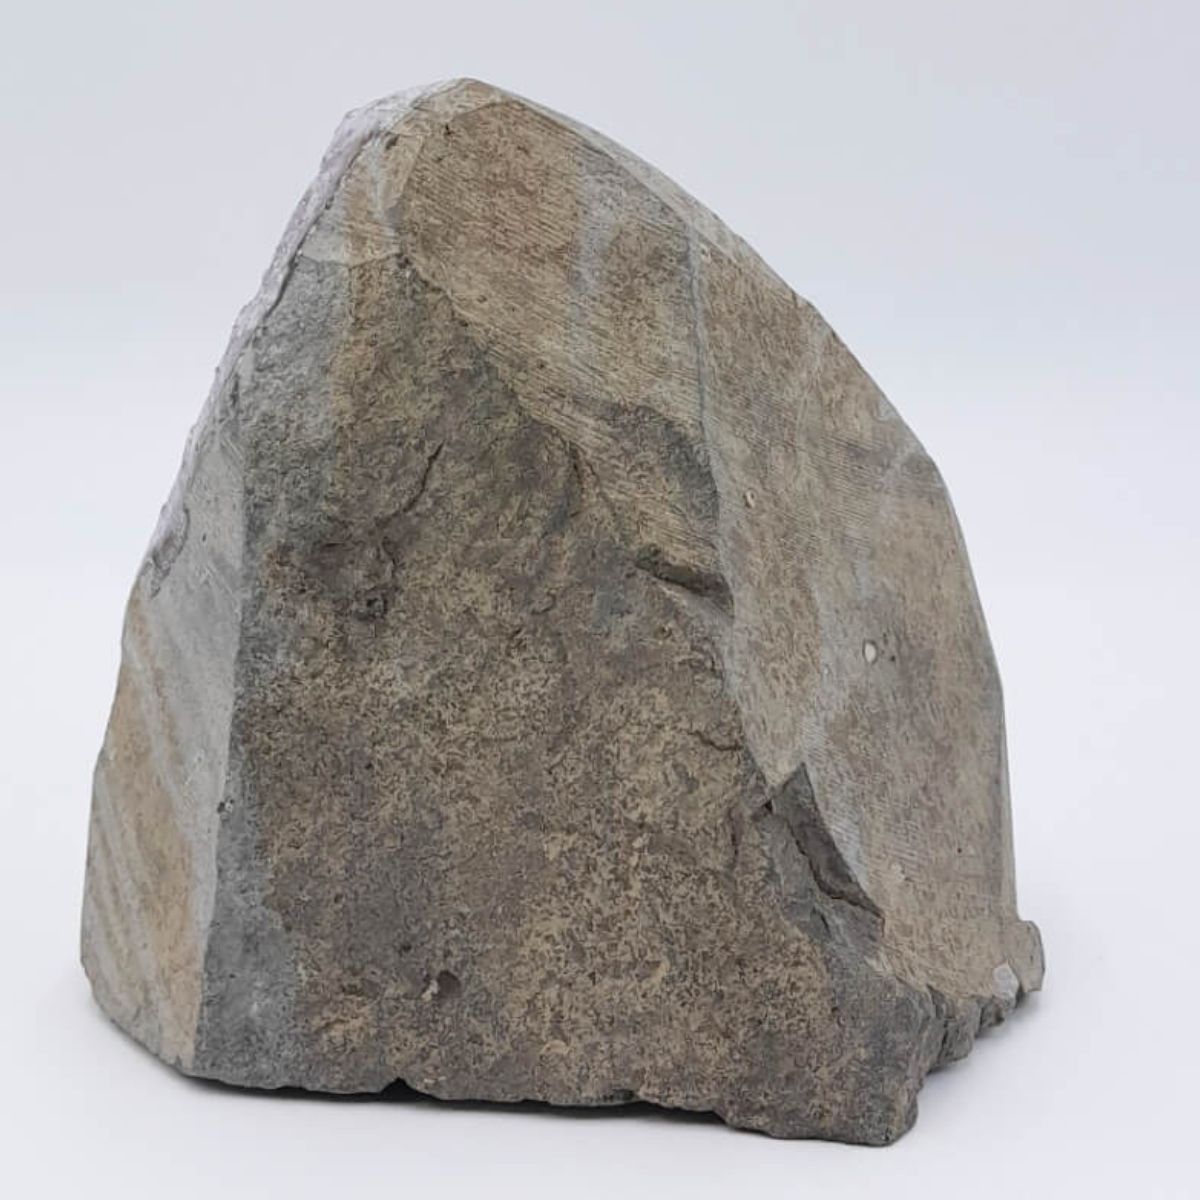 Pedra Mineral Drusa Ametista 1400-1600g